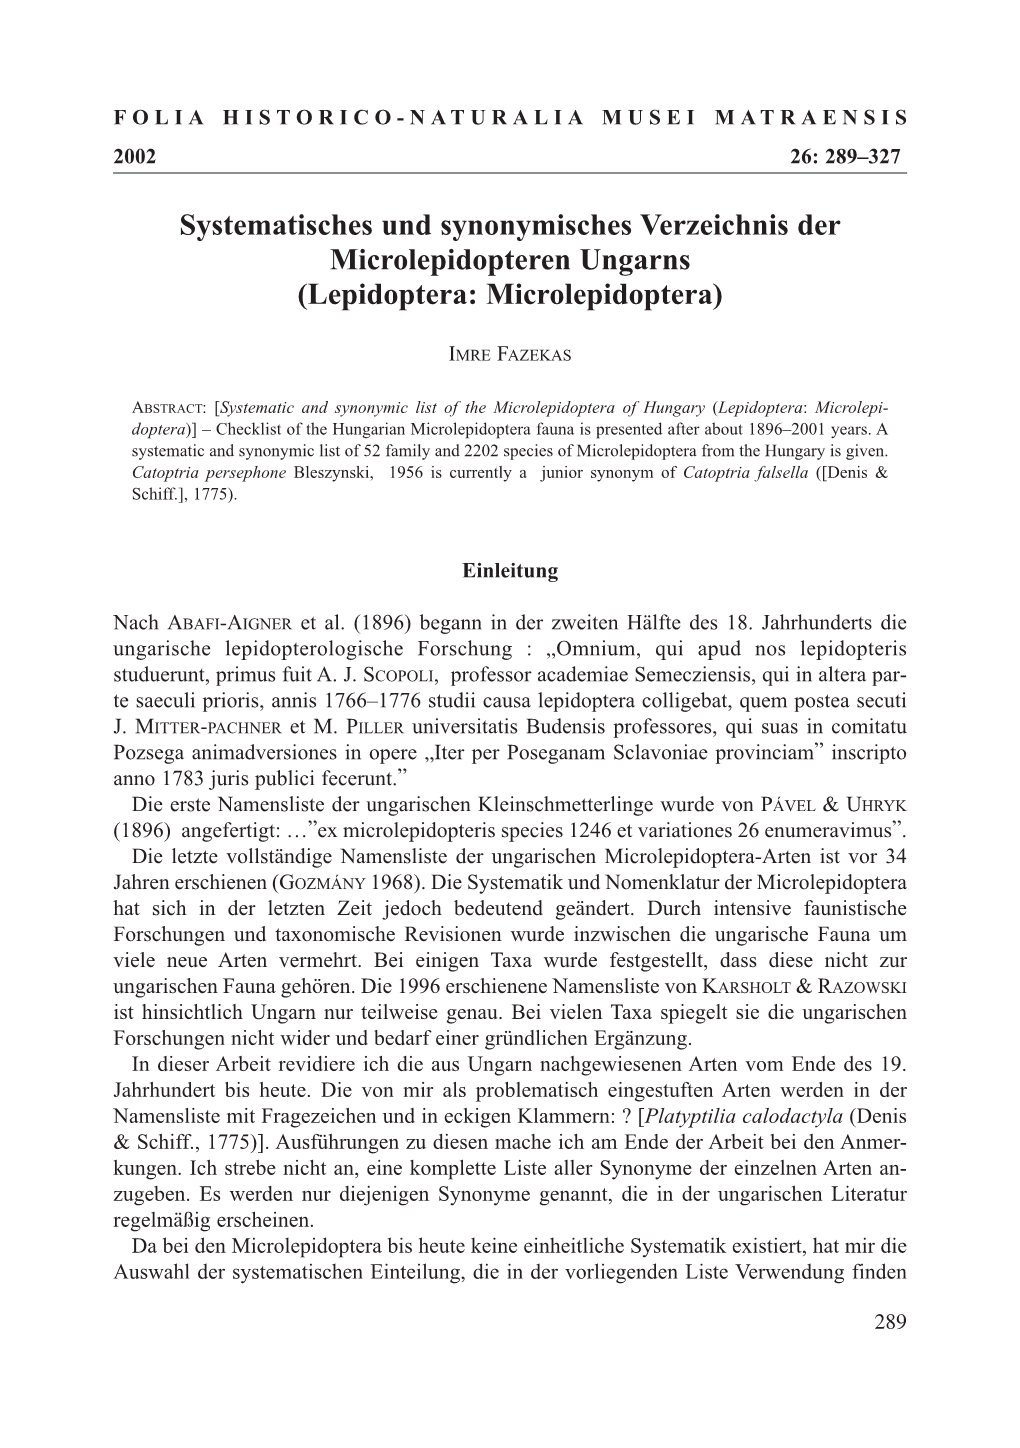 Systematisches Und Synonymisches Verzeichnis Der Microlepidopteren Ungarns (Lepidoptera: Microlepidoptera)